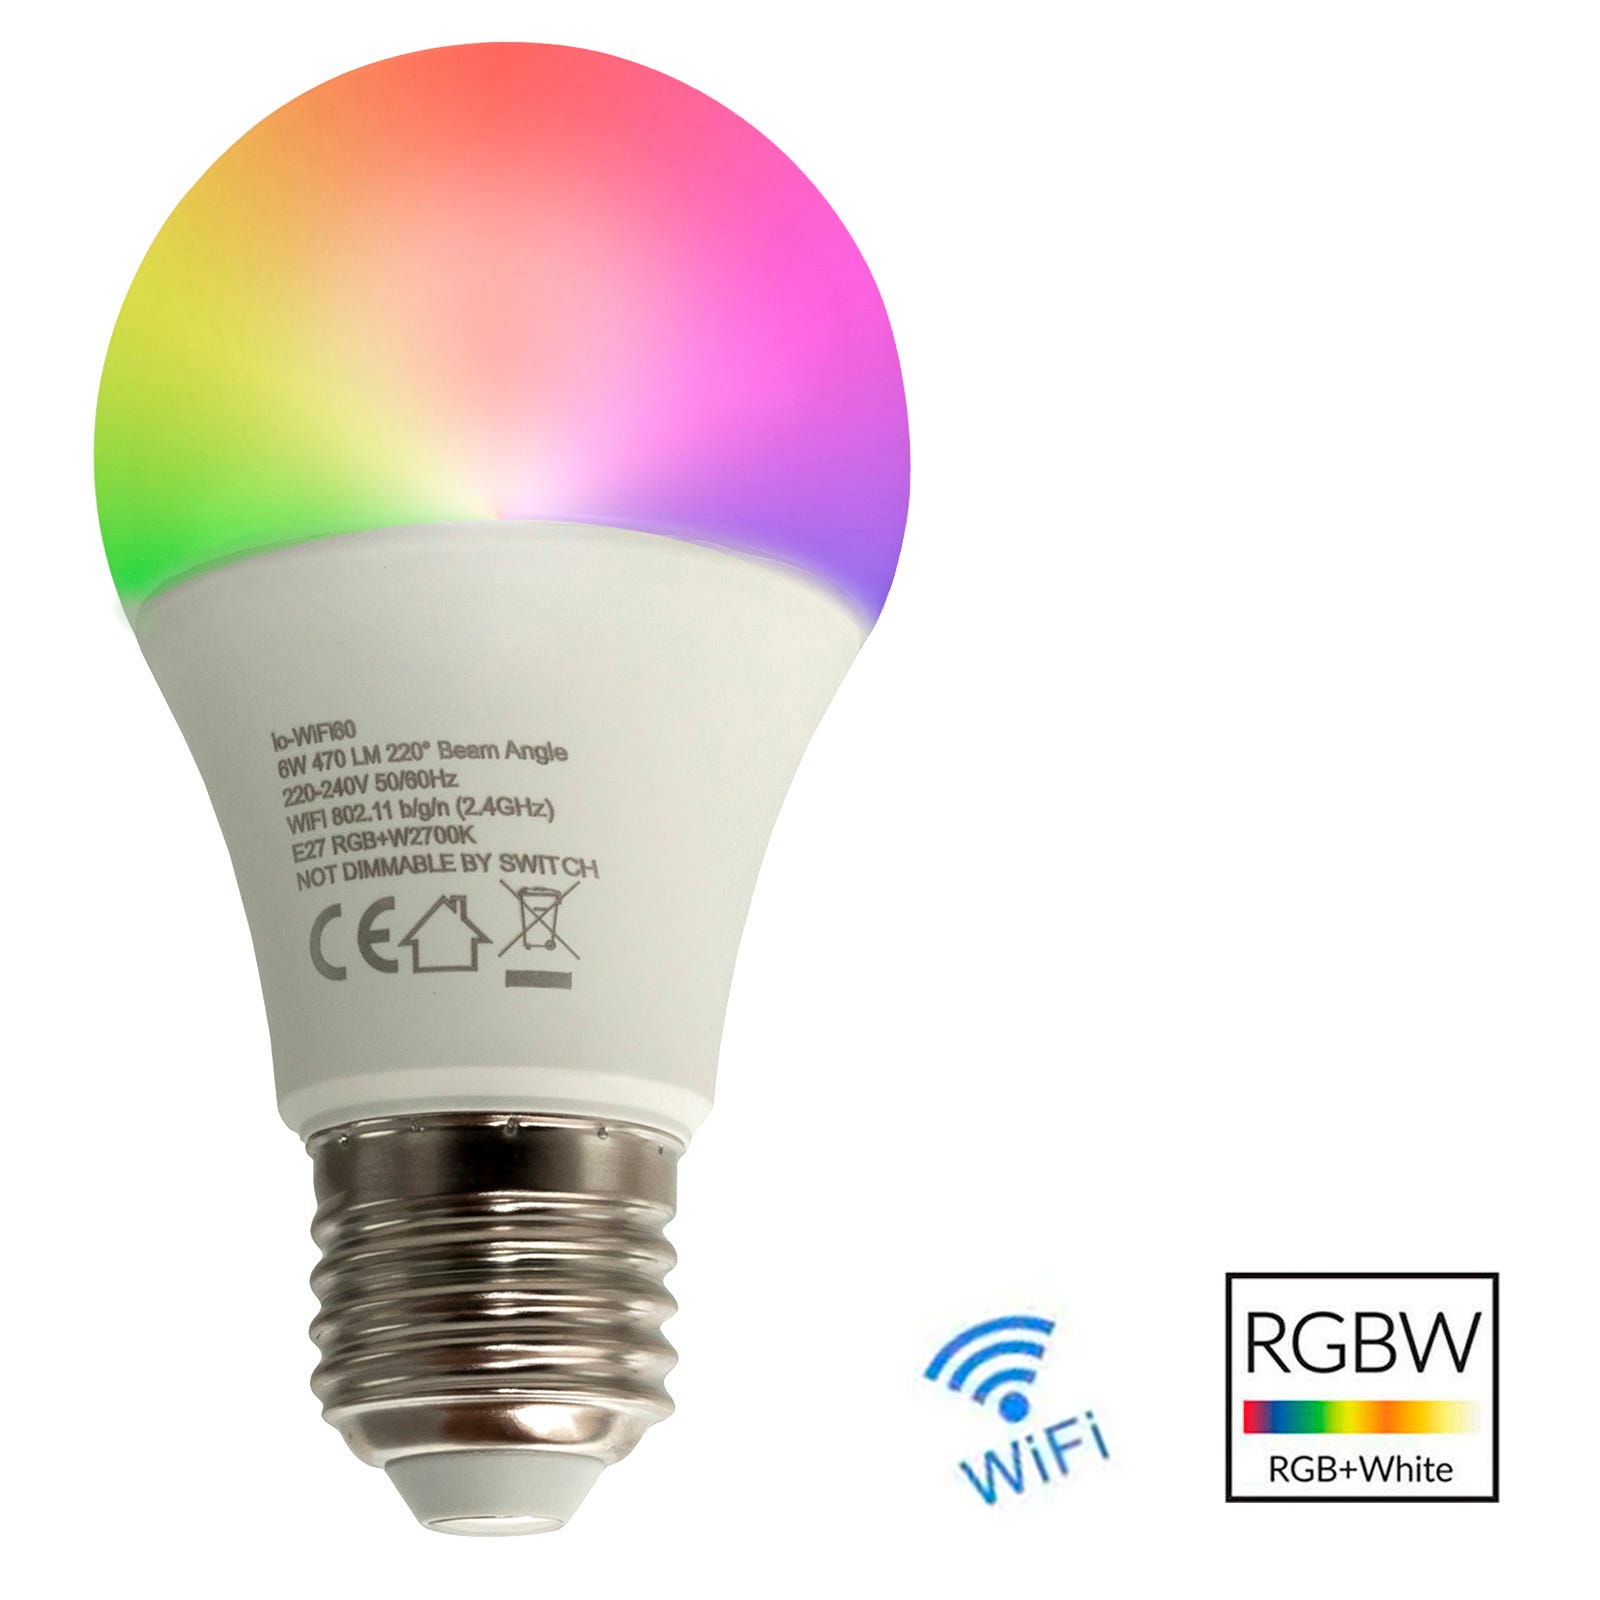 Ampoules à changement de couleur RVB, ampoule LED à intensité